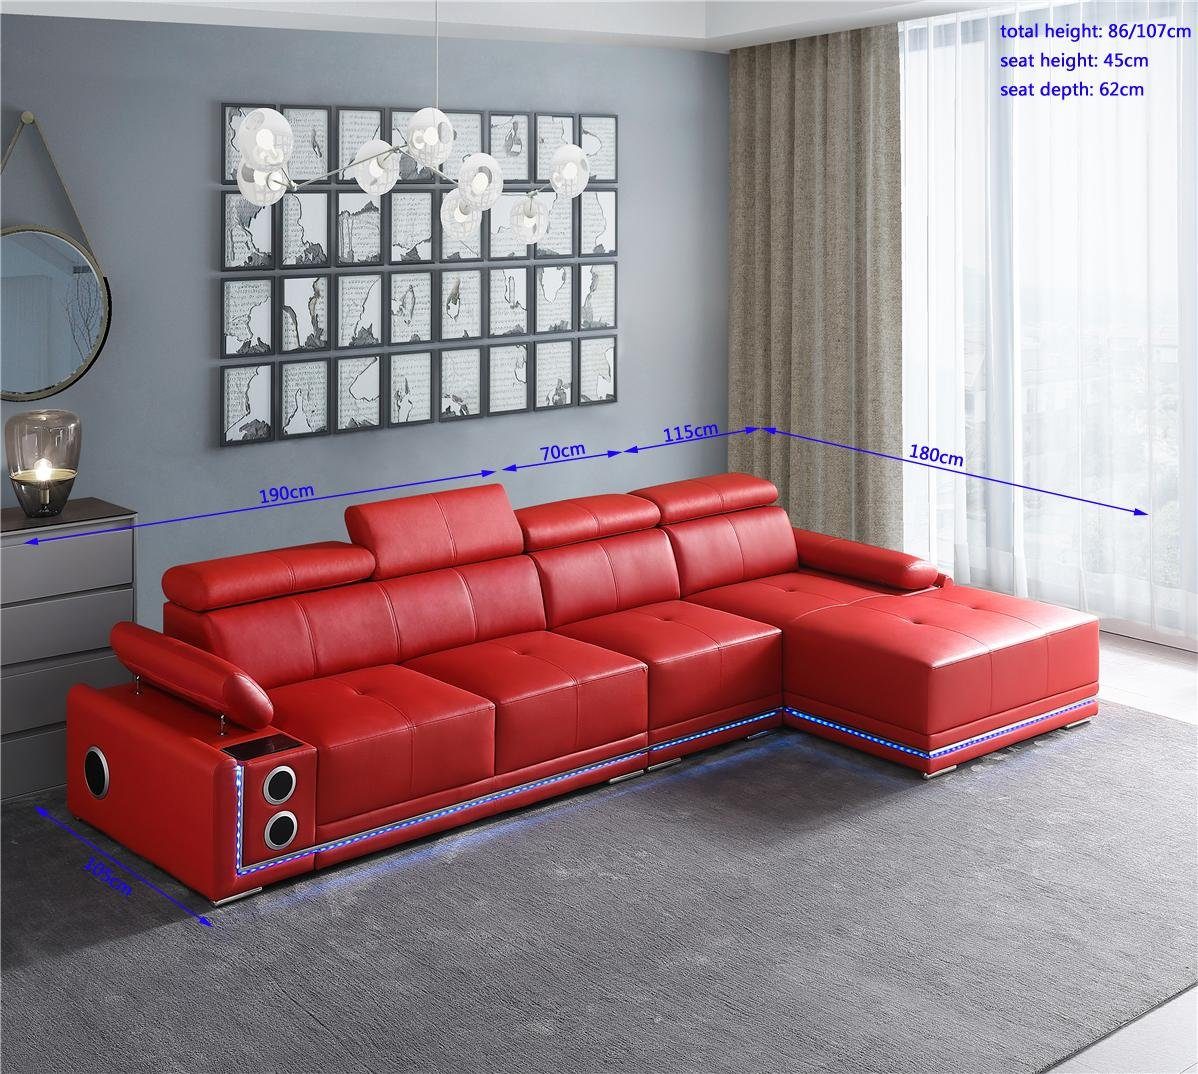 Beleuchtete Europe Couch in Rot Ecksofa Led L Made Boxen, Leder JVmoebel Sound Form Ecksofa